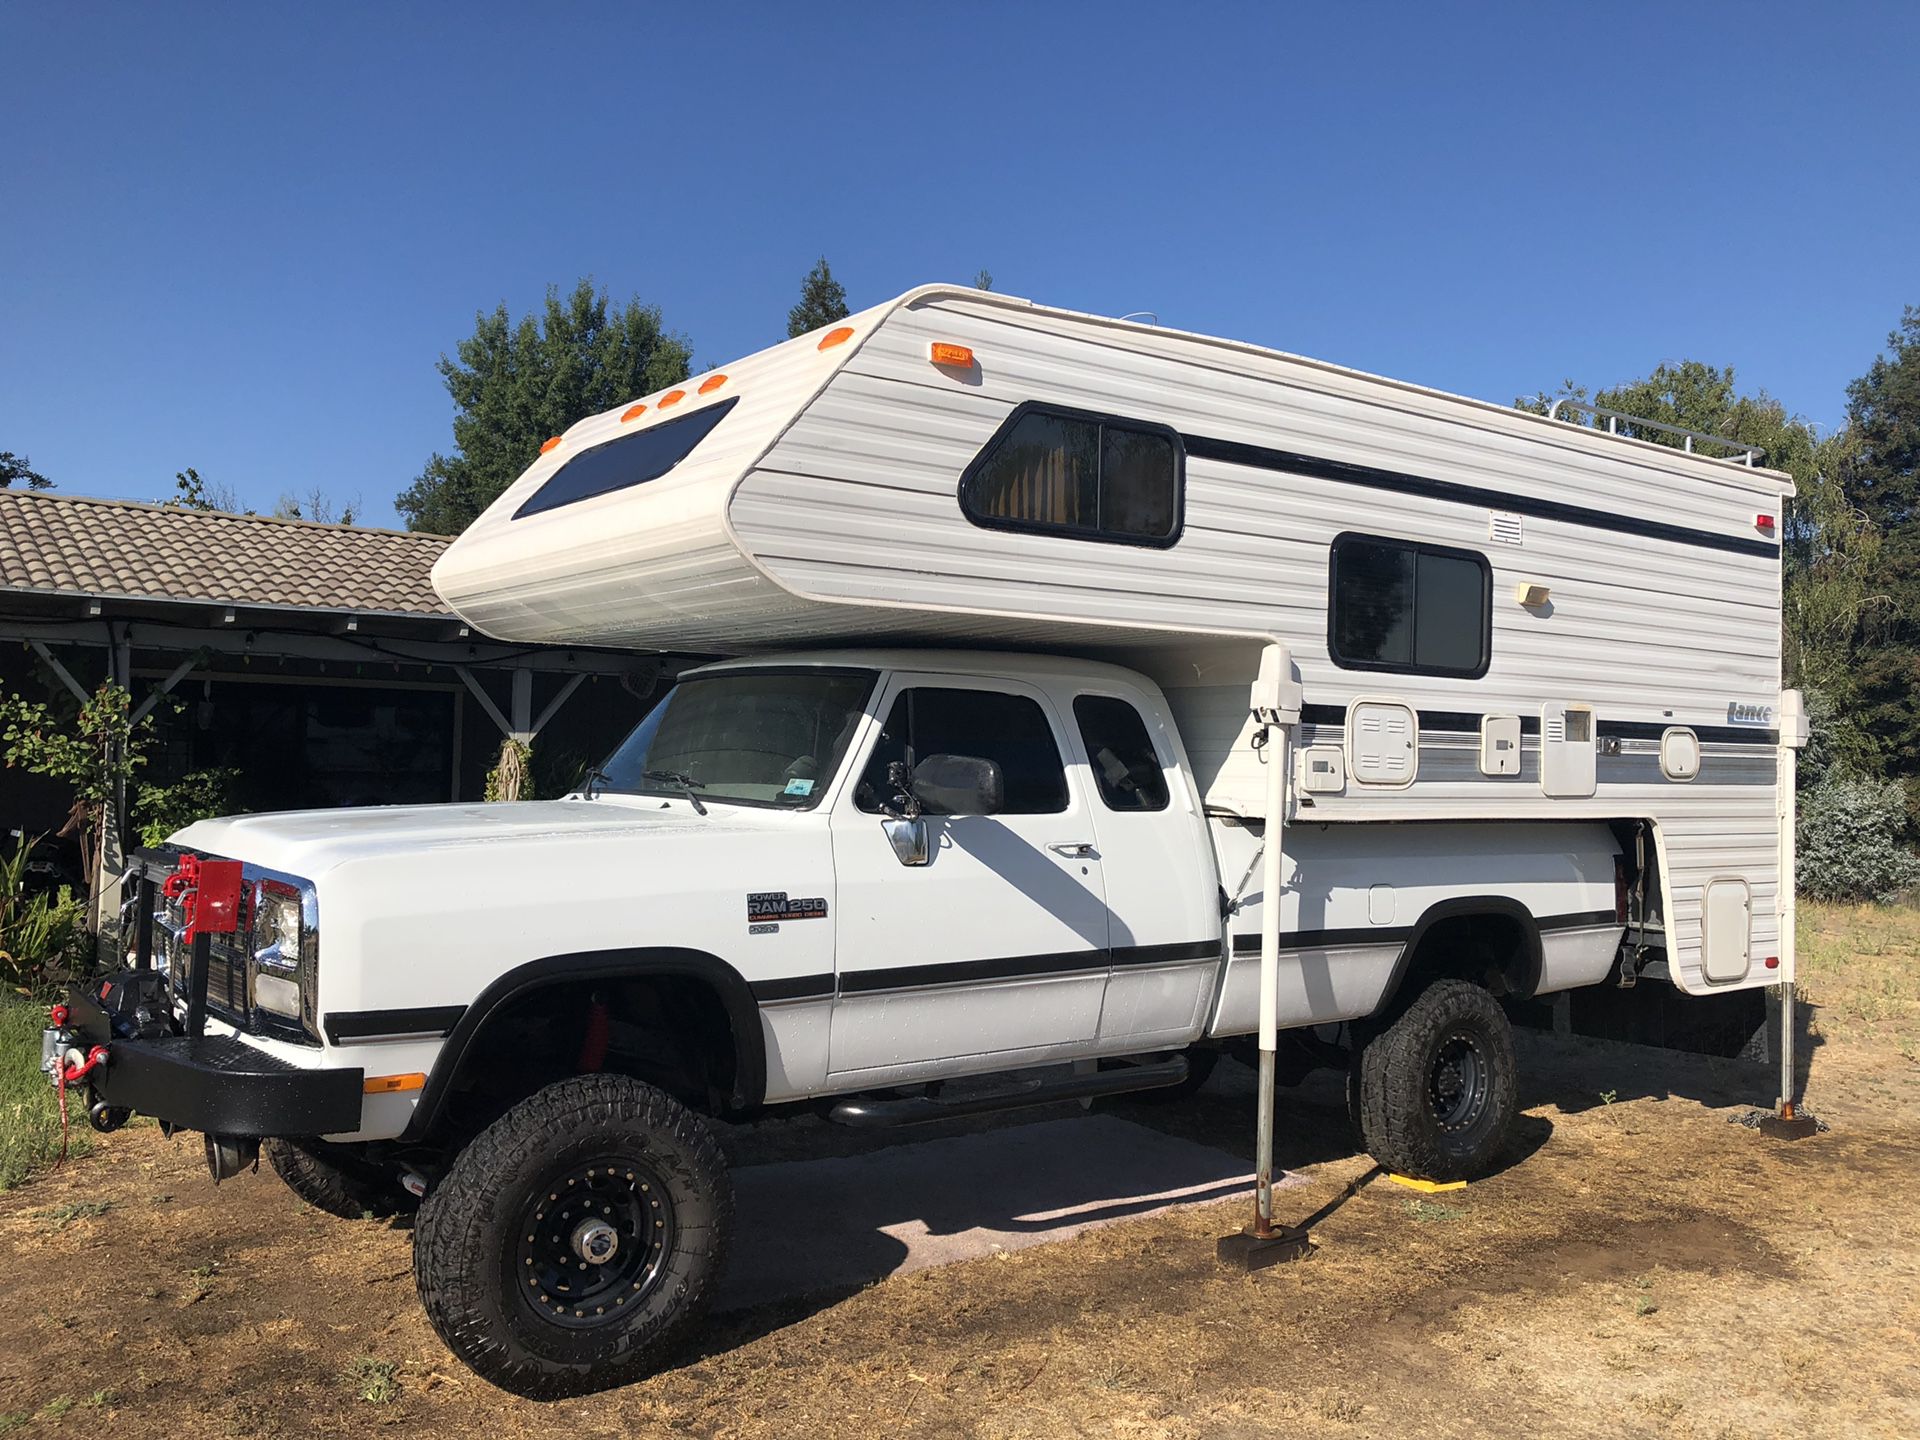 95’ Lance camper 945 11’3 extended cab “8ft bed